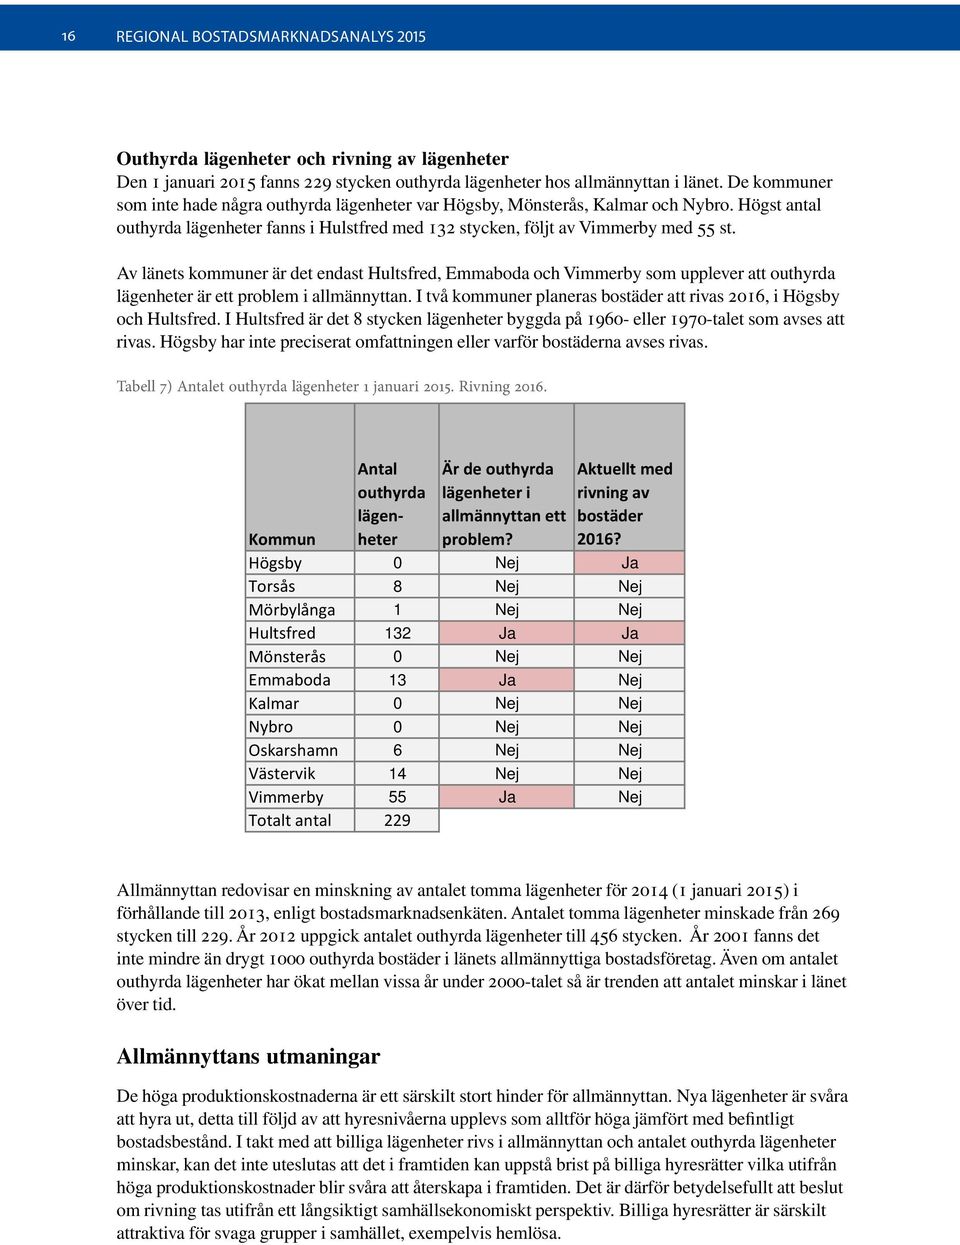 Av länets kommuner är det endast Hultsfred, Emmaboda och Vimmerby som upplever att outhyrda lägenheter är ett problem i allmännyttan.